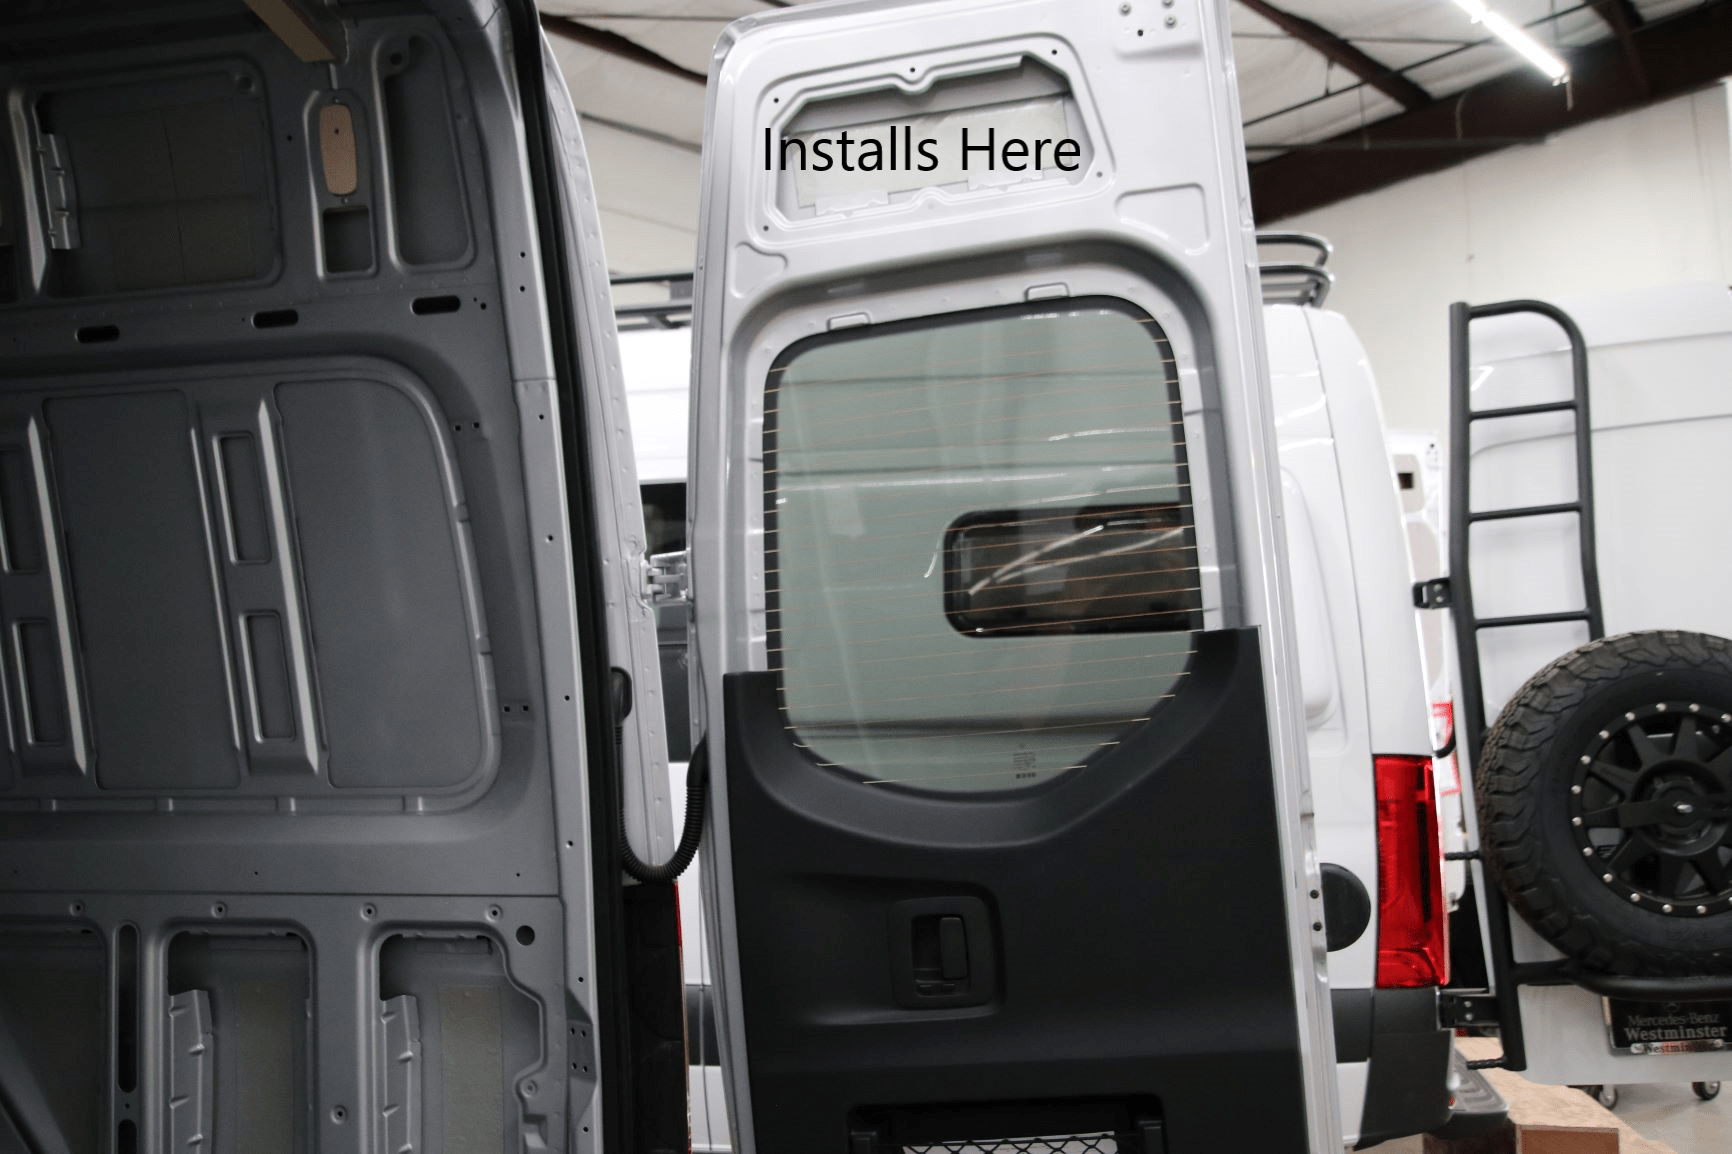  Install Location for Sprinter Conversion Van Rear Door Storage Cubby - The Vansmith in Boulder, Colorado